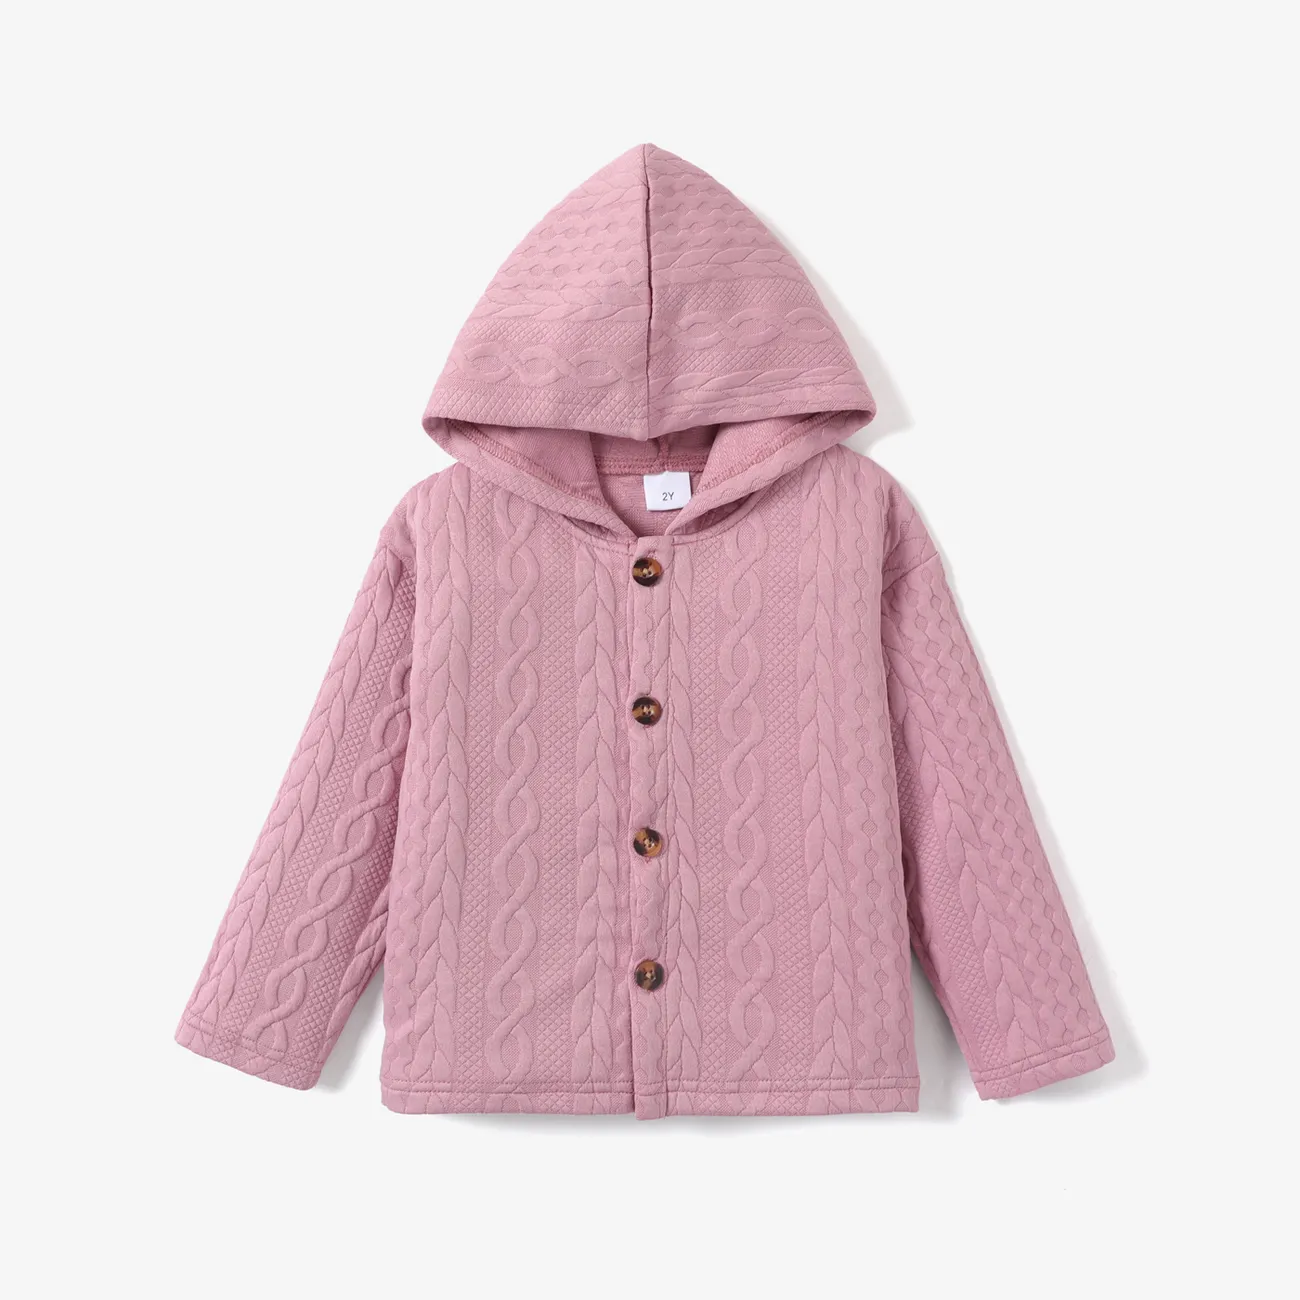 Kid Boy/Girl Solid Color Hooded Coat  Pink big image 1